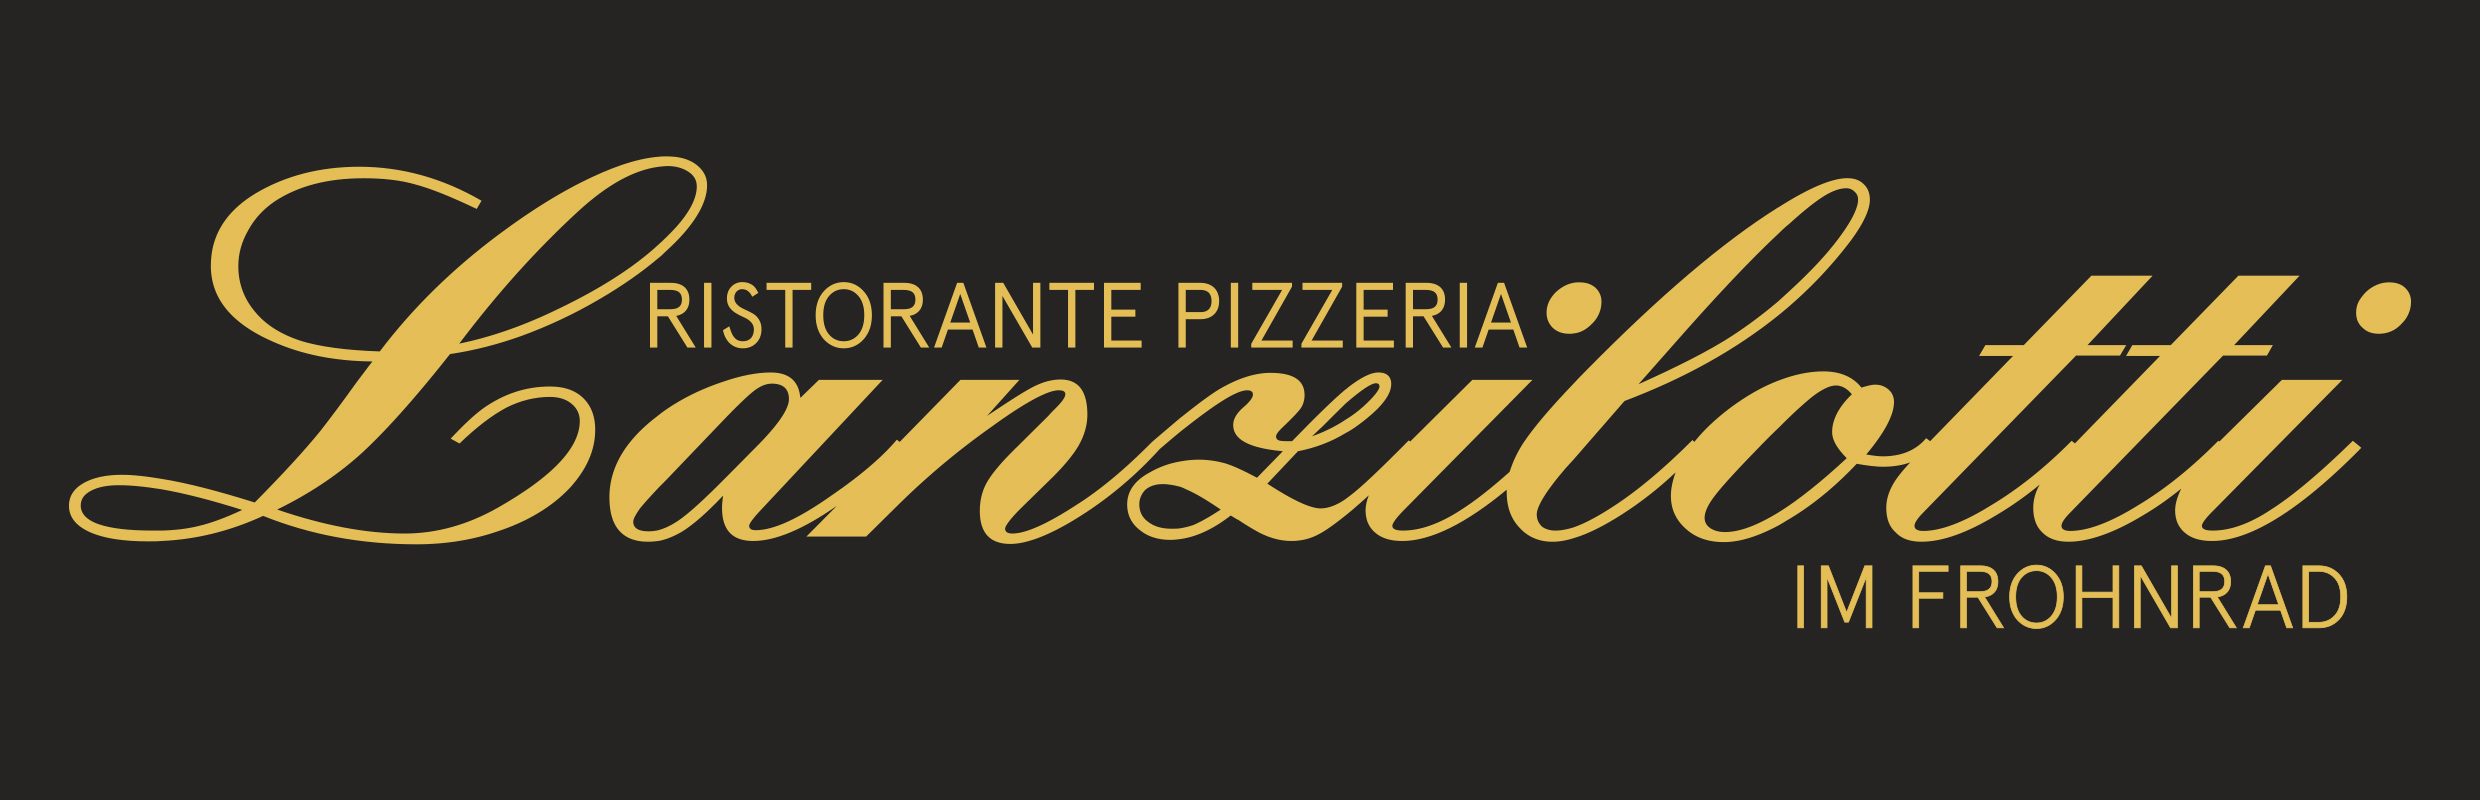 Ristorante Pizzeria Lanzilotti